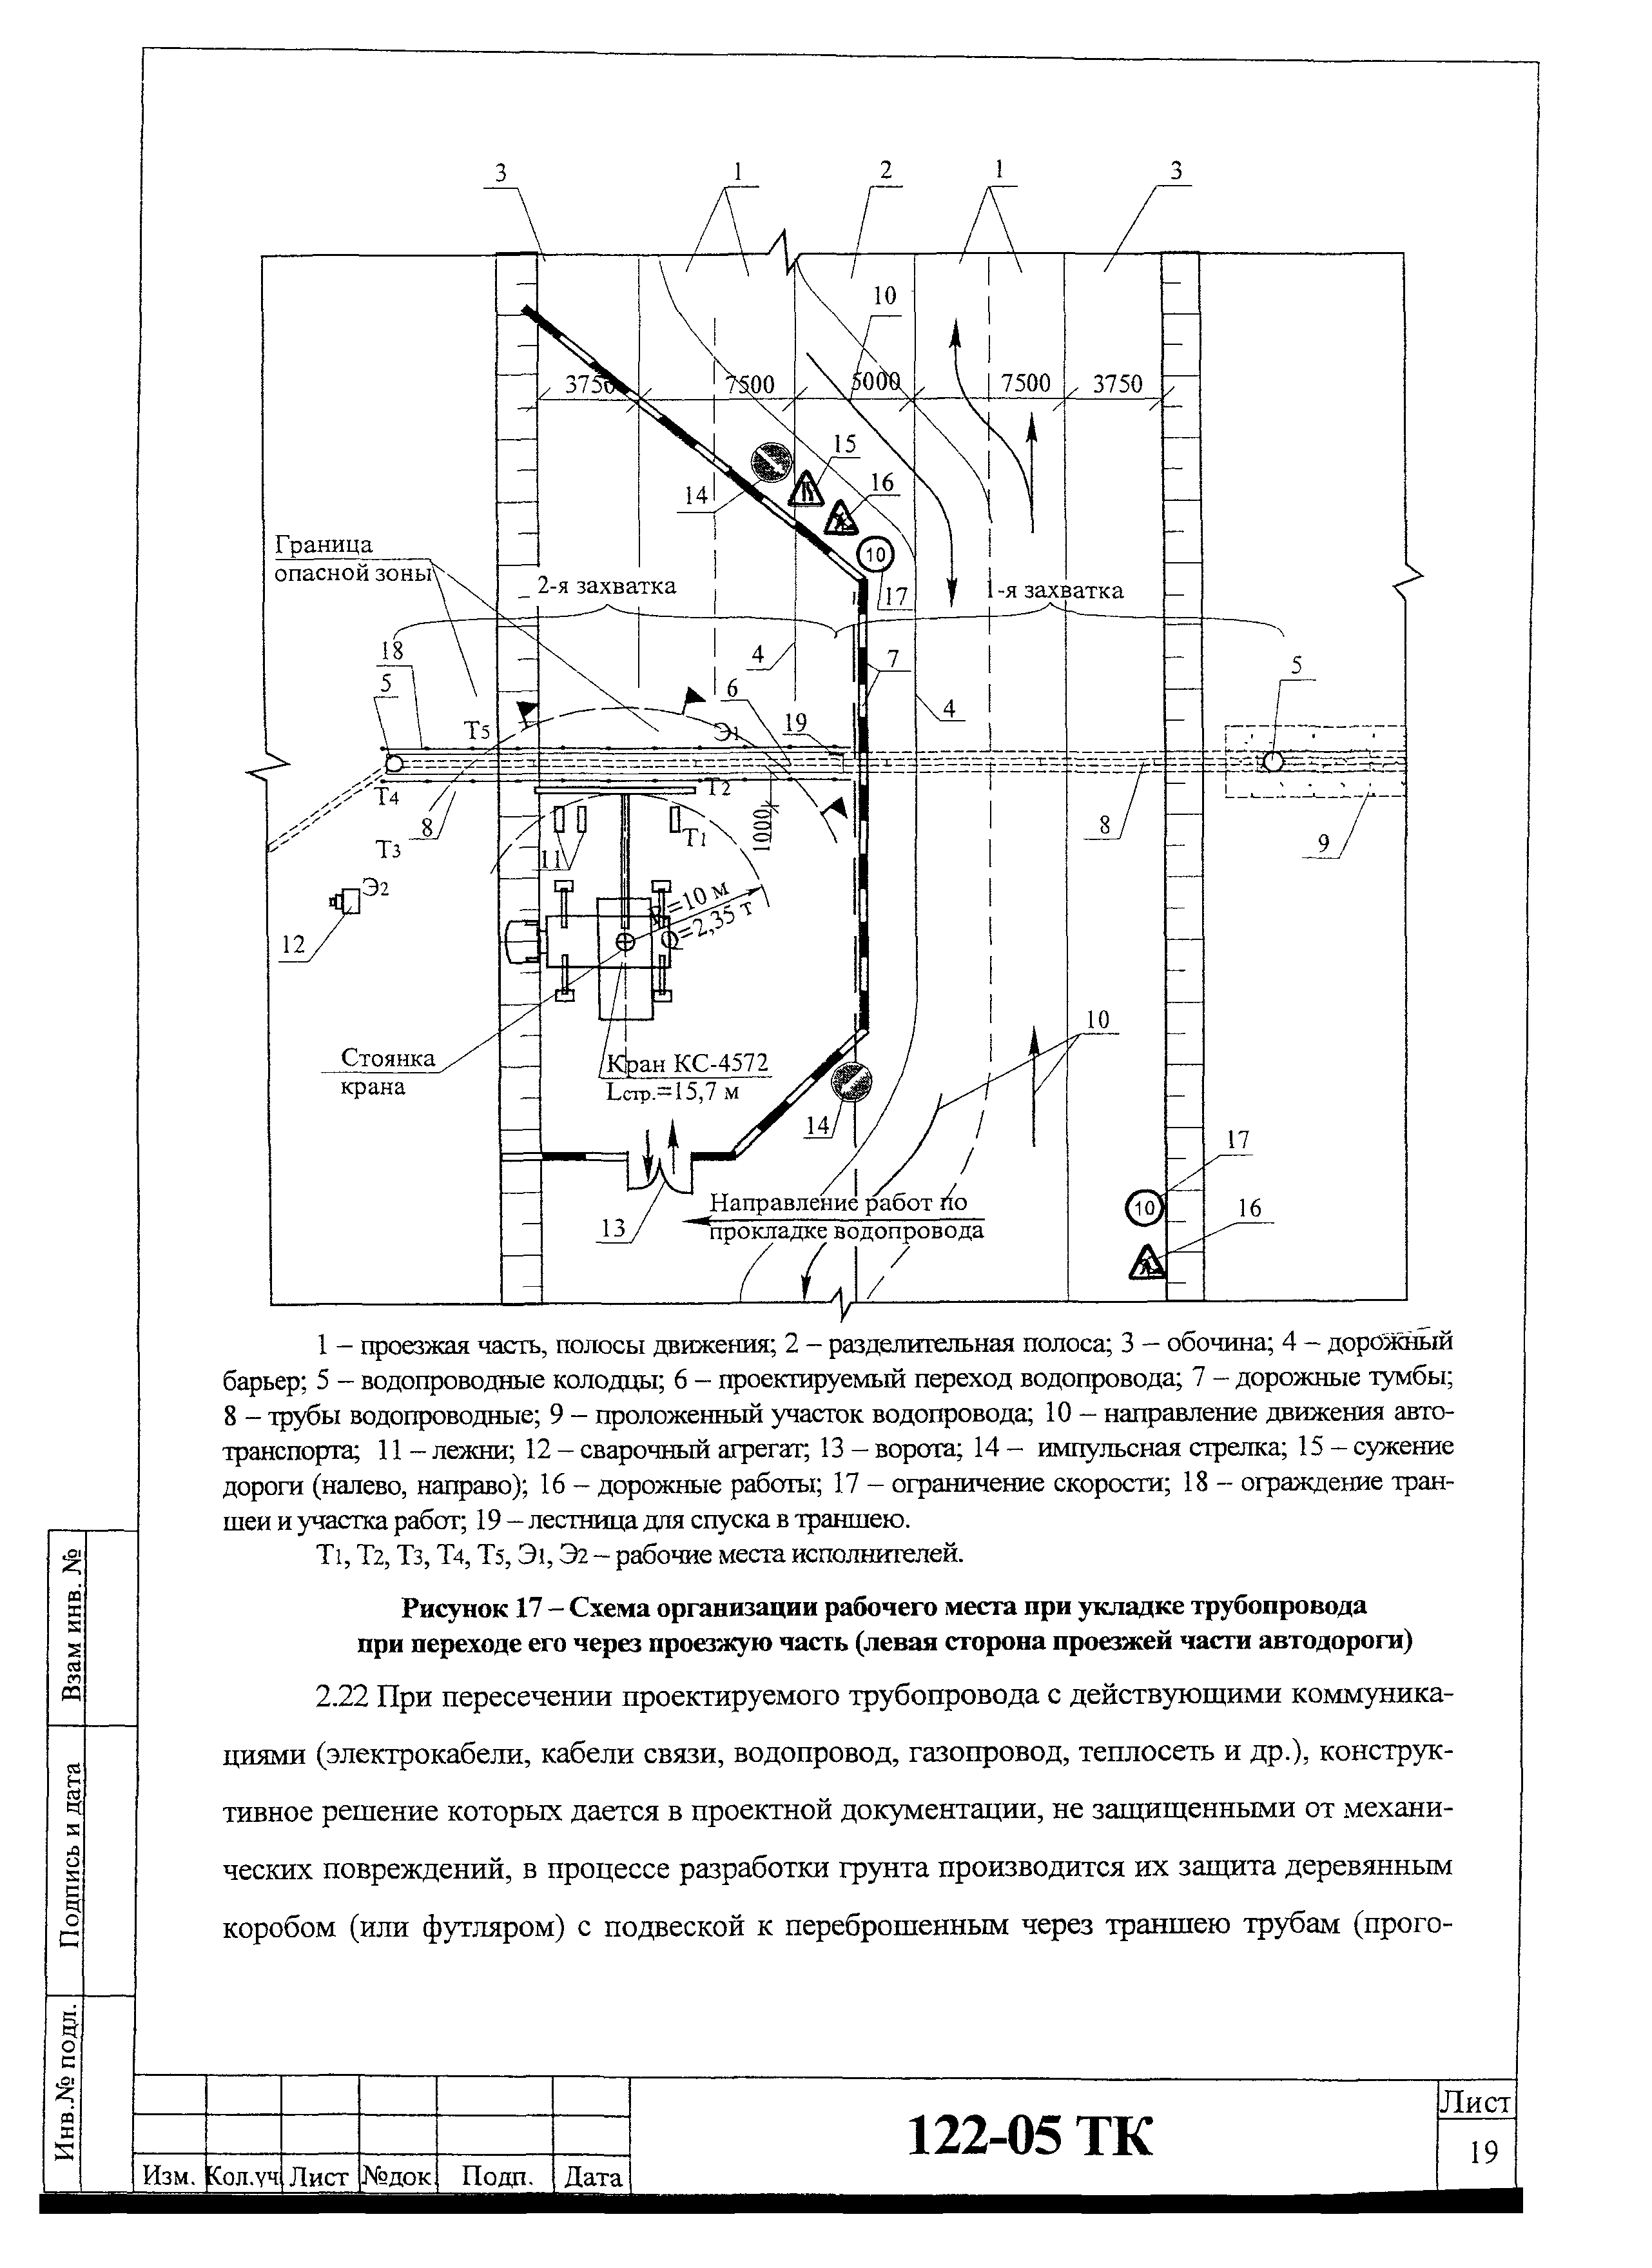 Технологическая карта 122-05 ТК